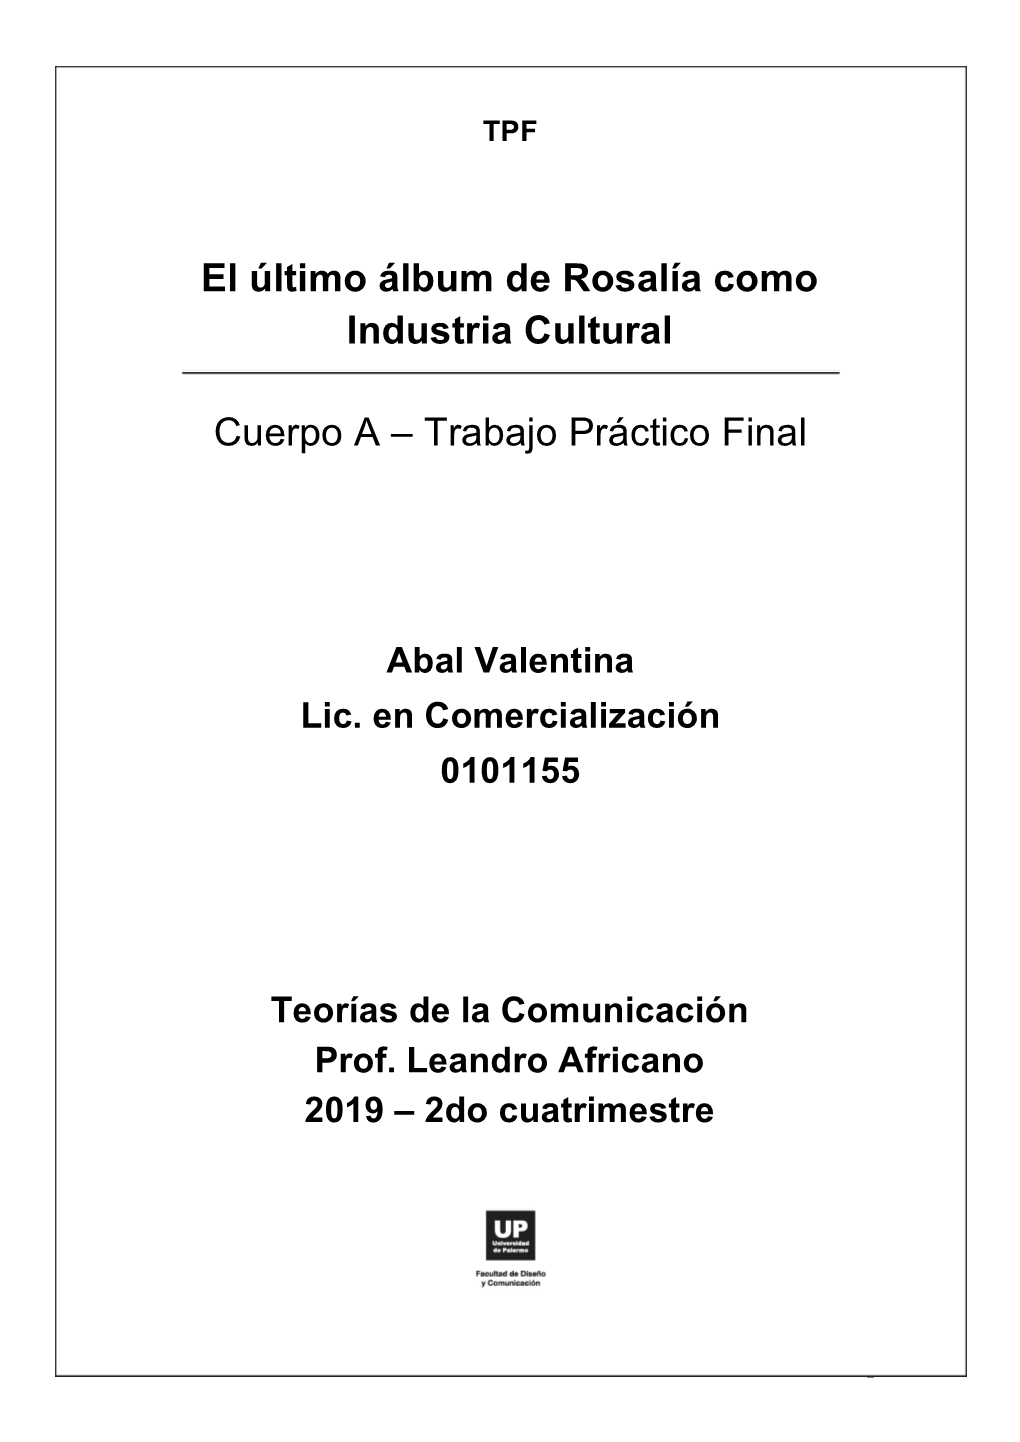 El Último Álbum De Rosalía Como Industria Cultural Cuerpo A